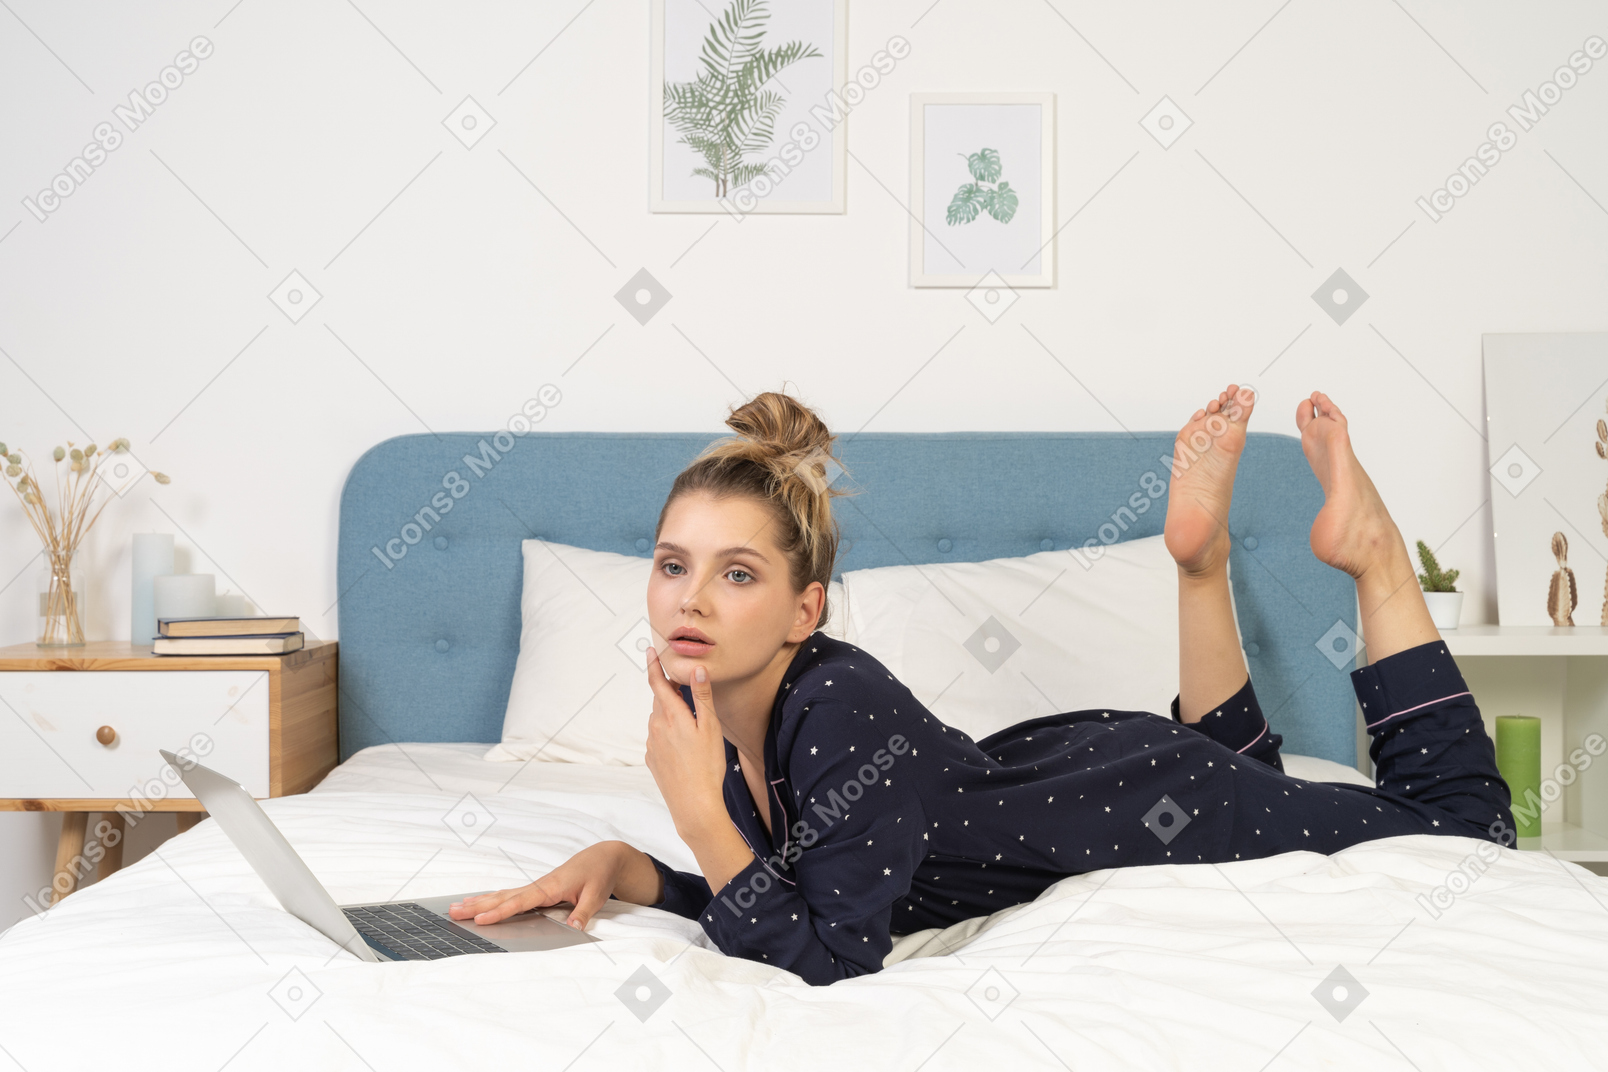 그녀의 노트북과 함께 침대에 누워 젊은 여성의 측면보기